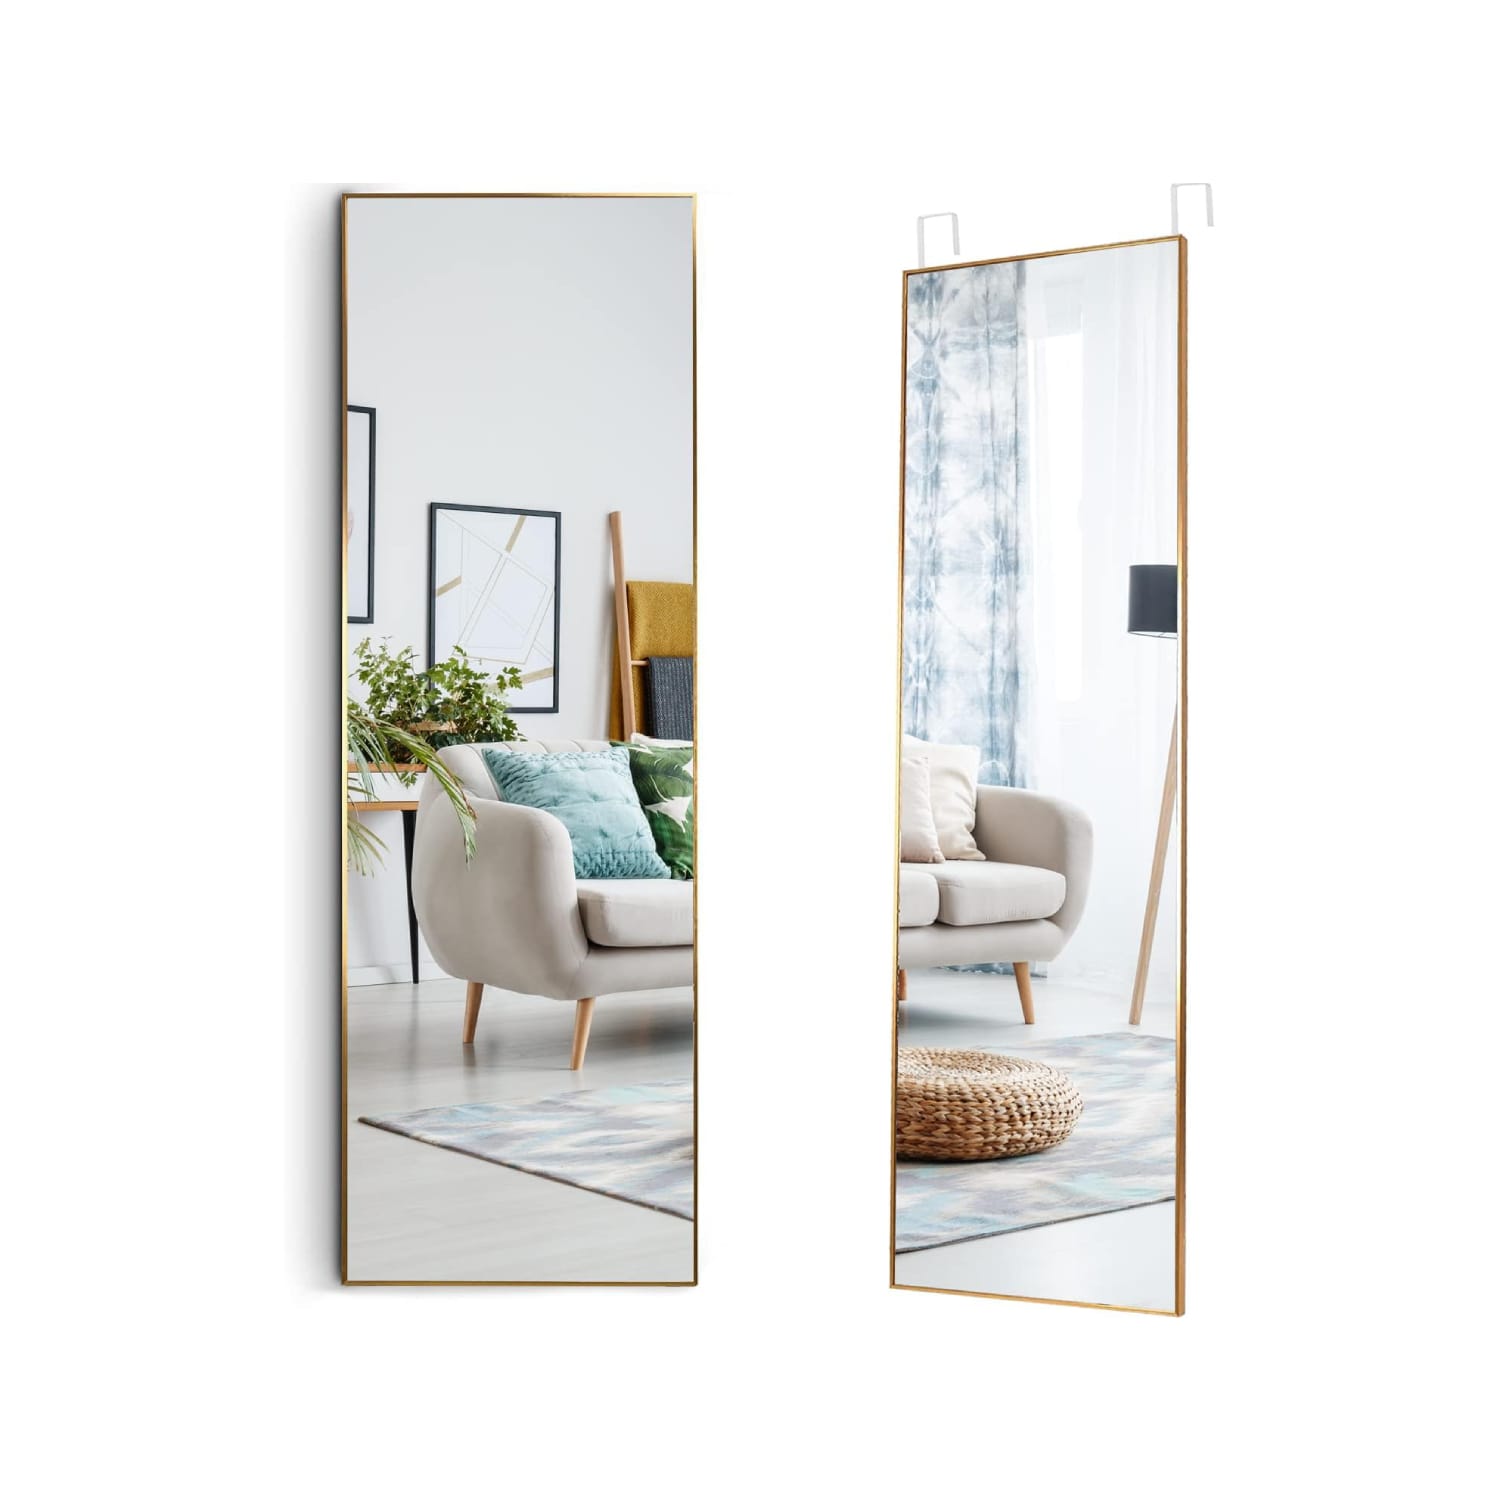 How to Hang a Mirror on a Door - 3 Easy DIY Methods